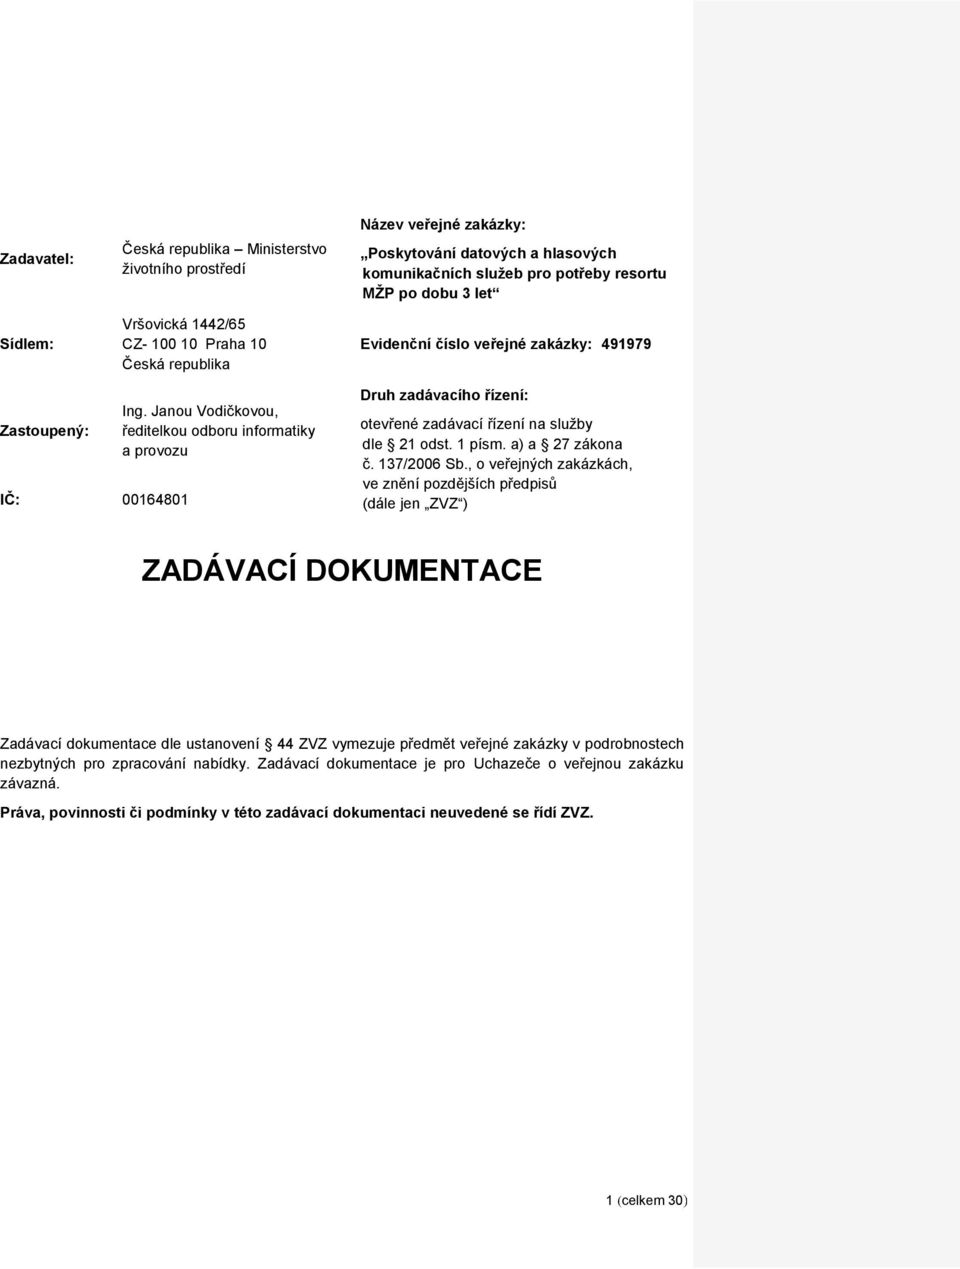 Janou Vodičkovou, ředitelkou odboru informatiky a provozu Druh zadávacího řízení: otevřené zadávací řízení na služby dle 21 odst. 1 písm. a) a 27 zákona č. 137/2006 Sb.